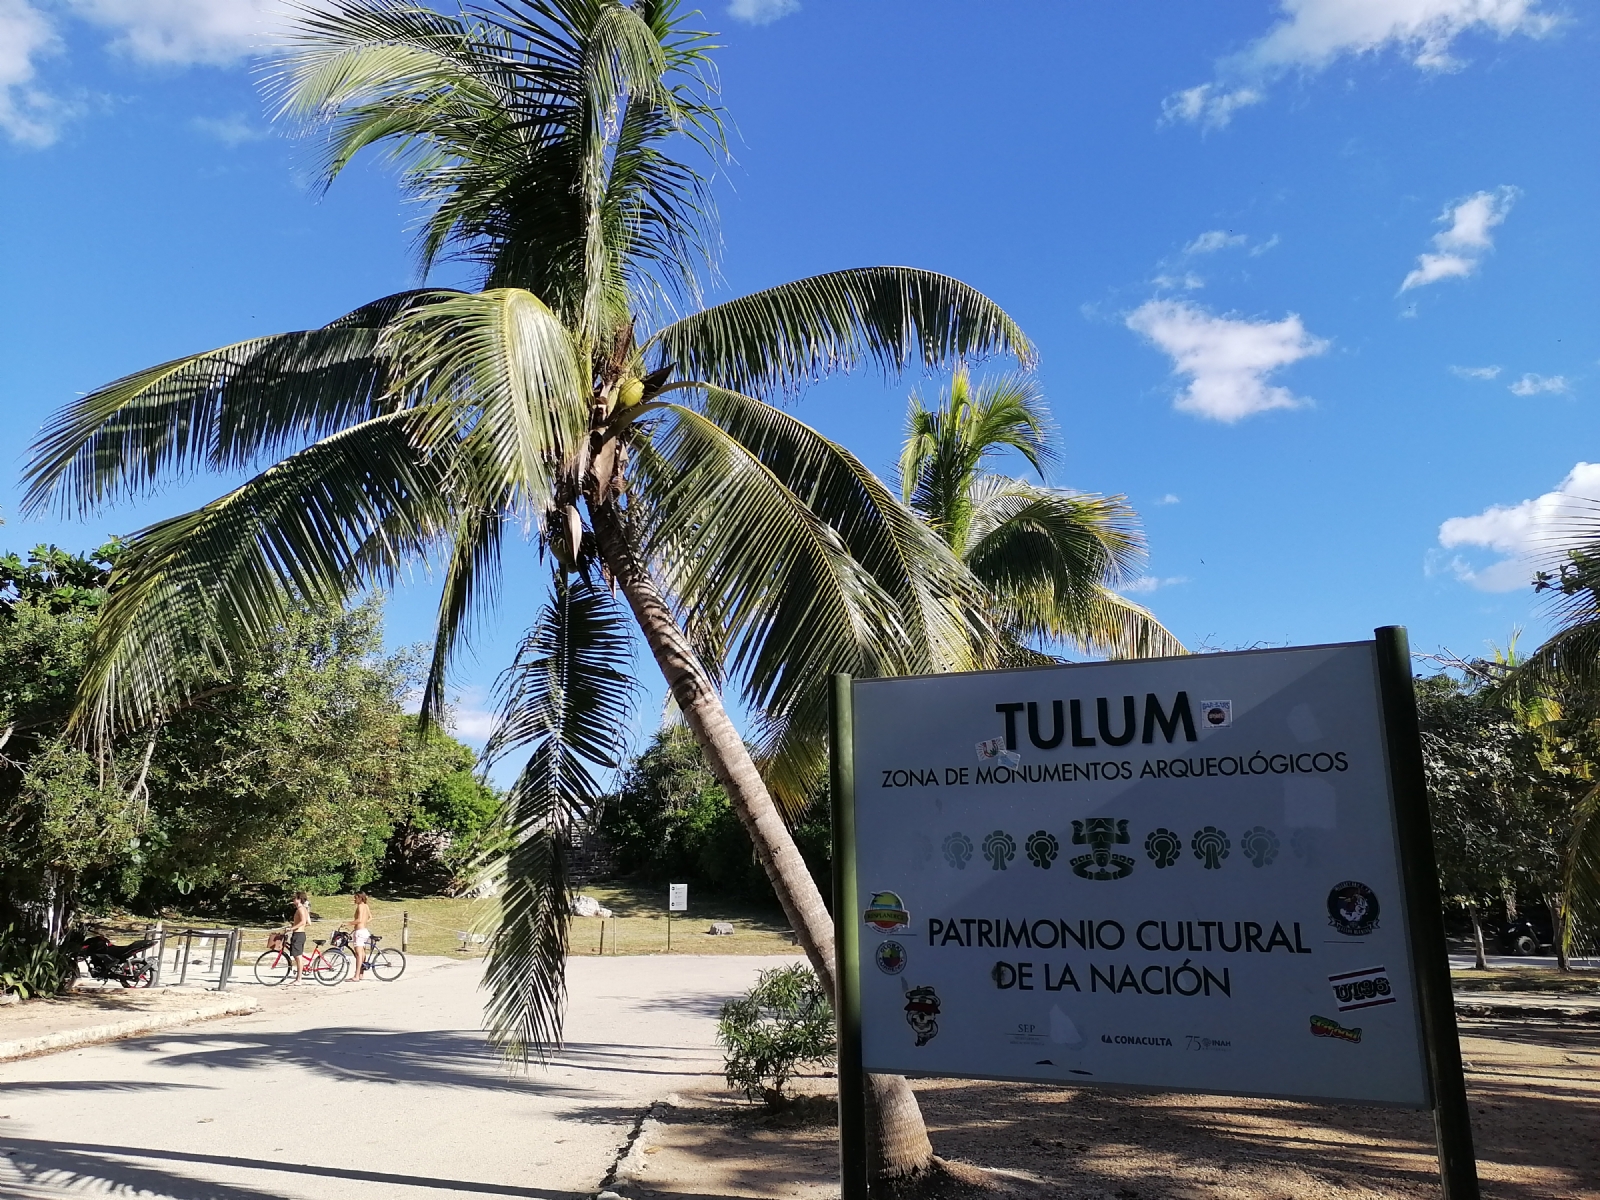 Cierre 'exprés' de la zona arqueológica de Tulum, afecta actividad turística, aseguran